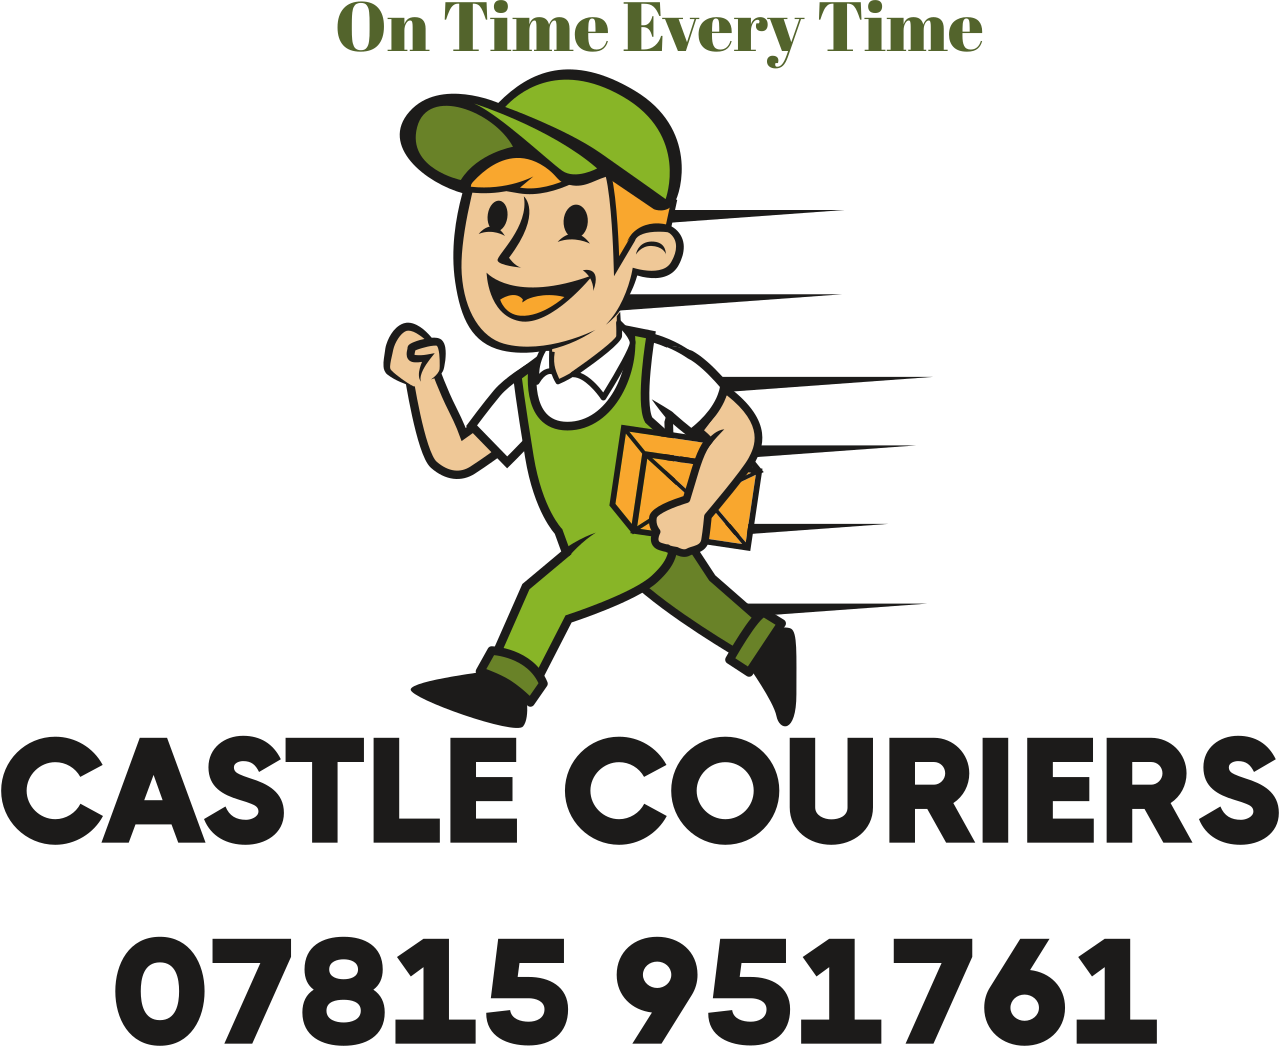 Castle Couriers's web page